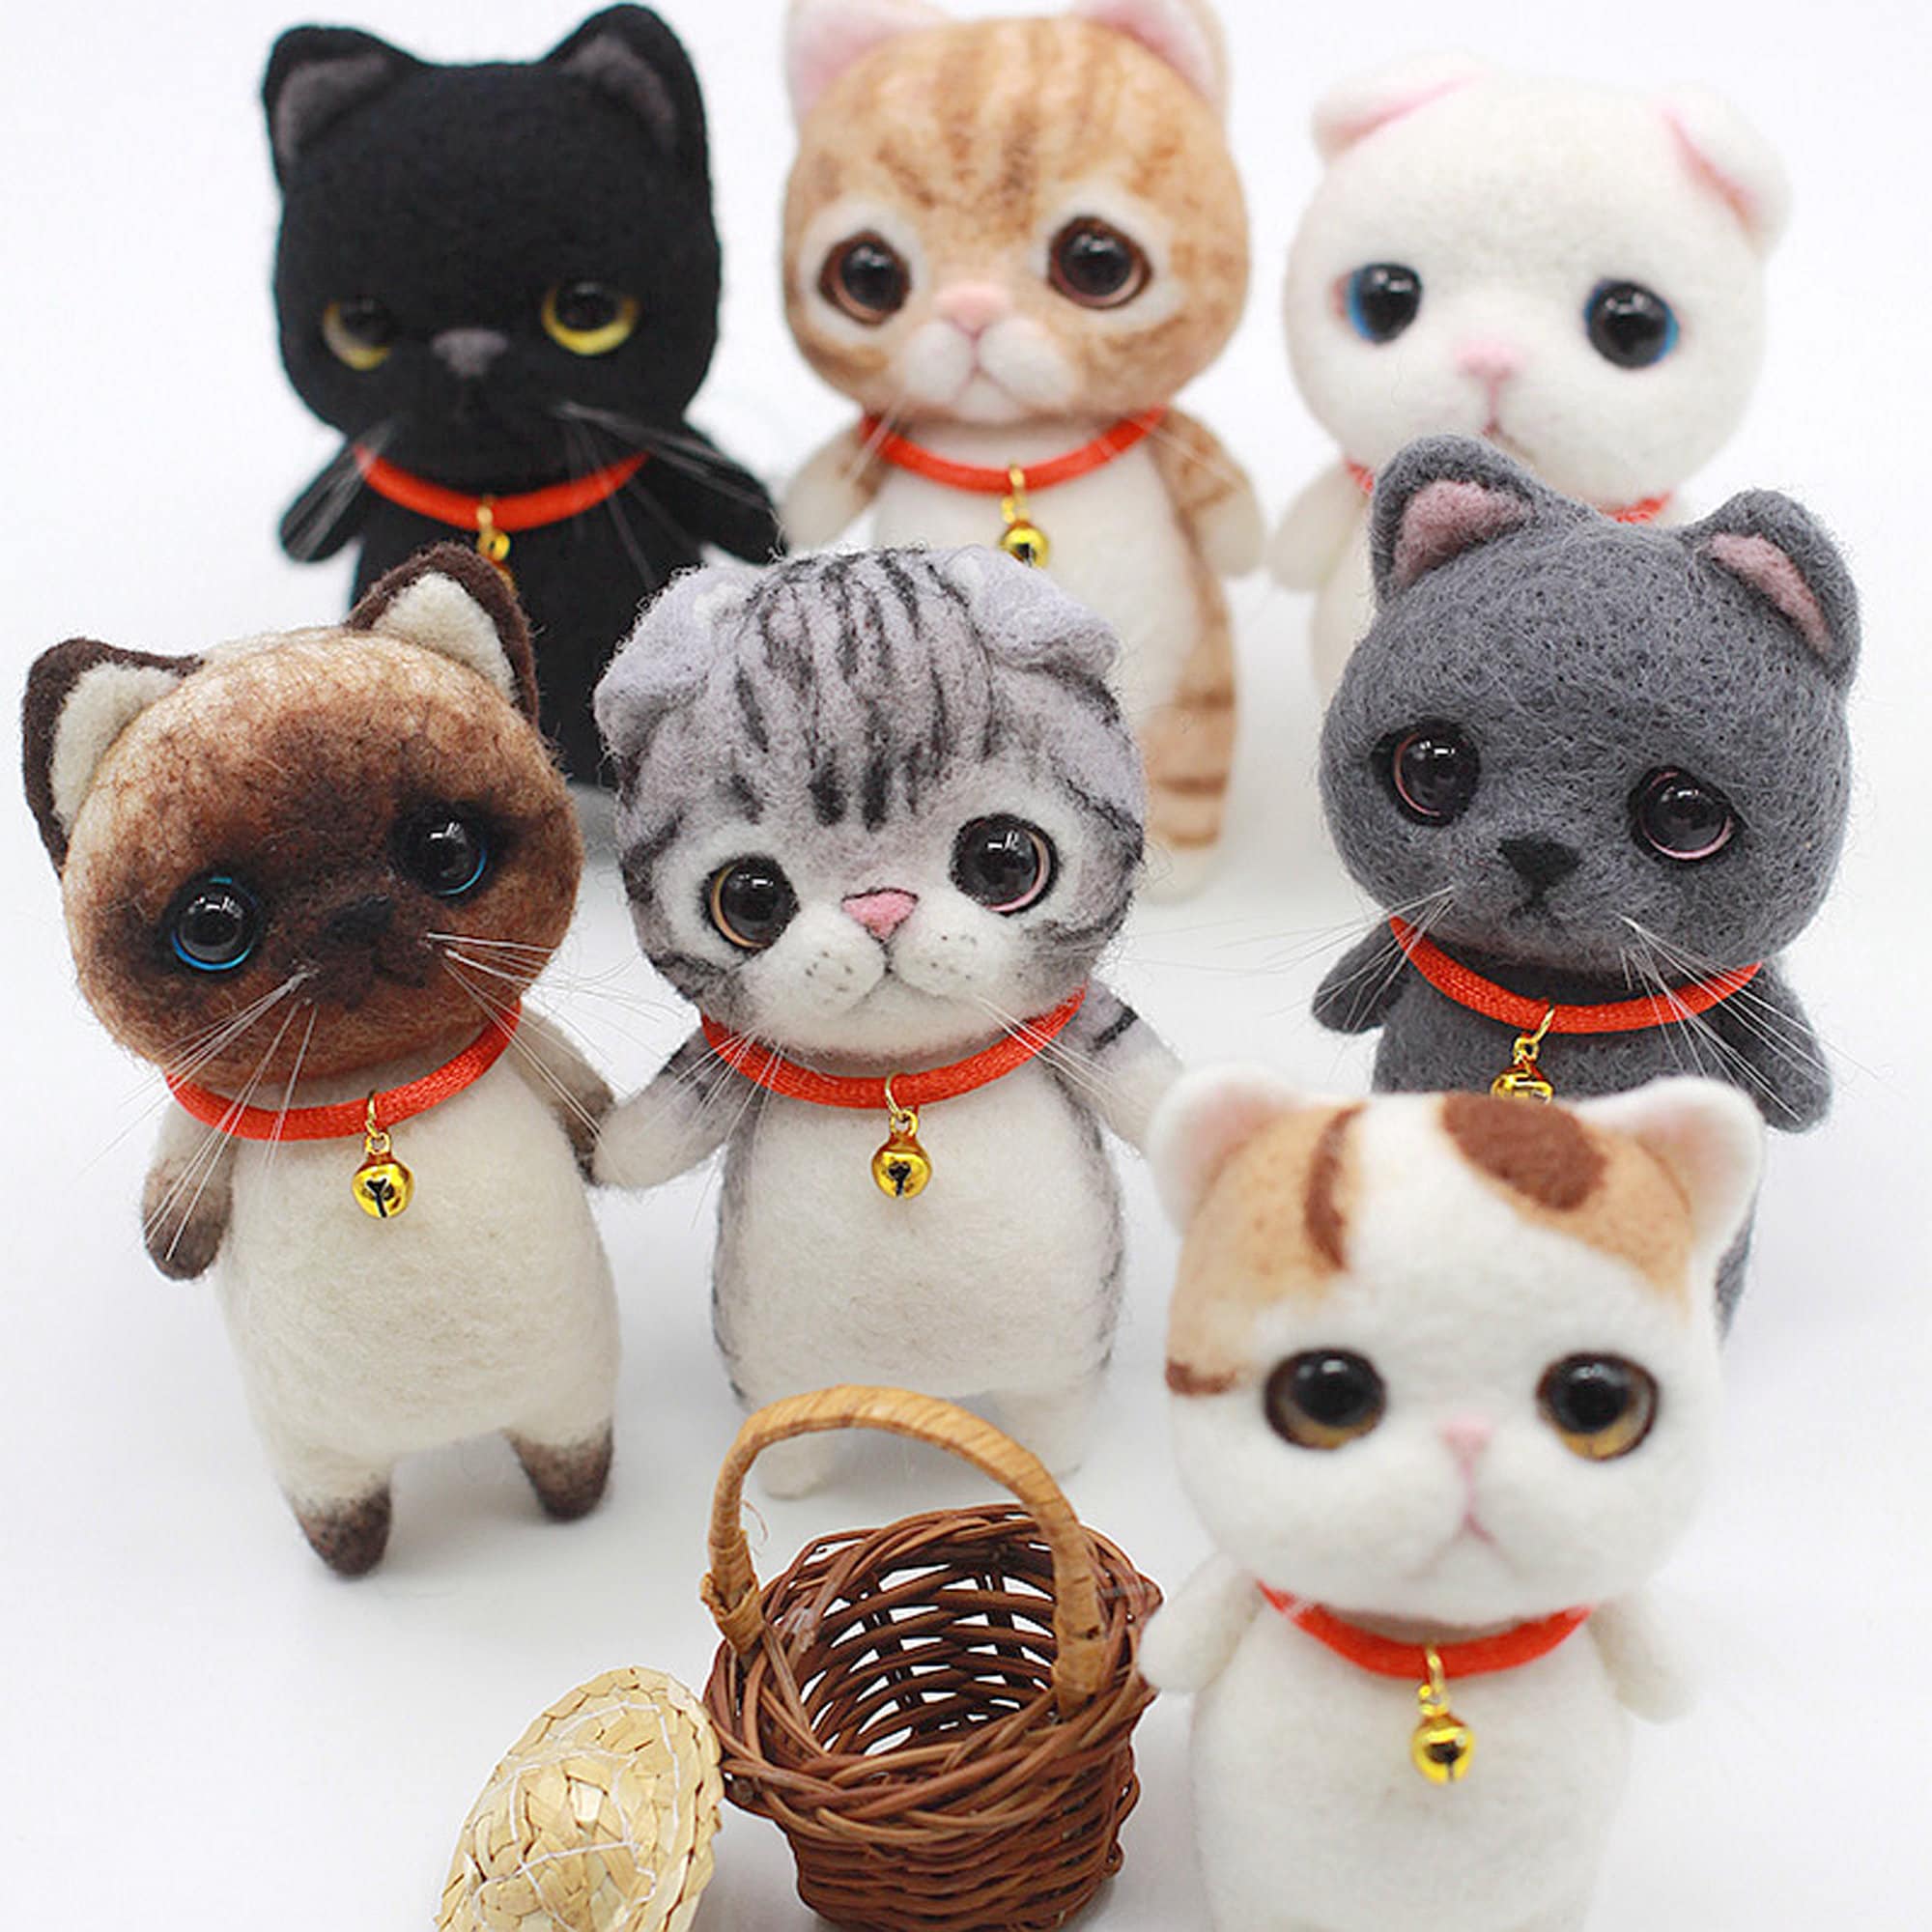 Kätzchen Plüschkatze Plüschtier Haustier Katzenspielzeug Spielzeug 